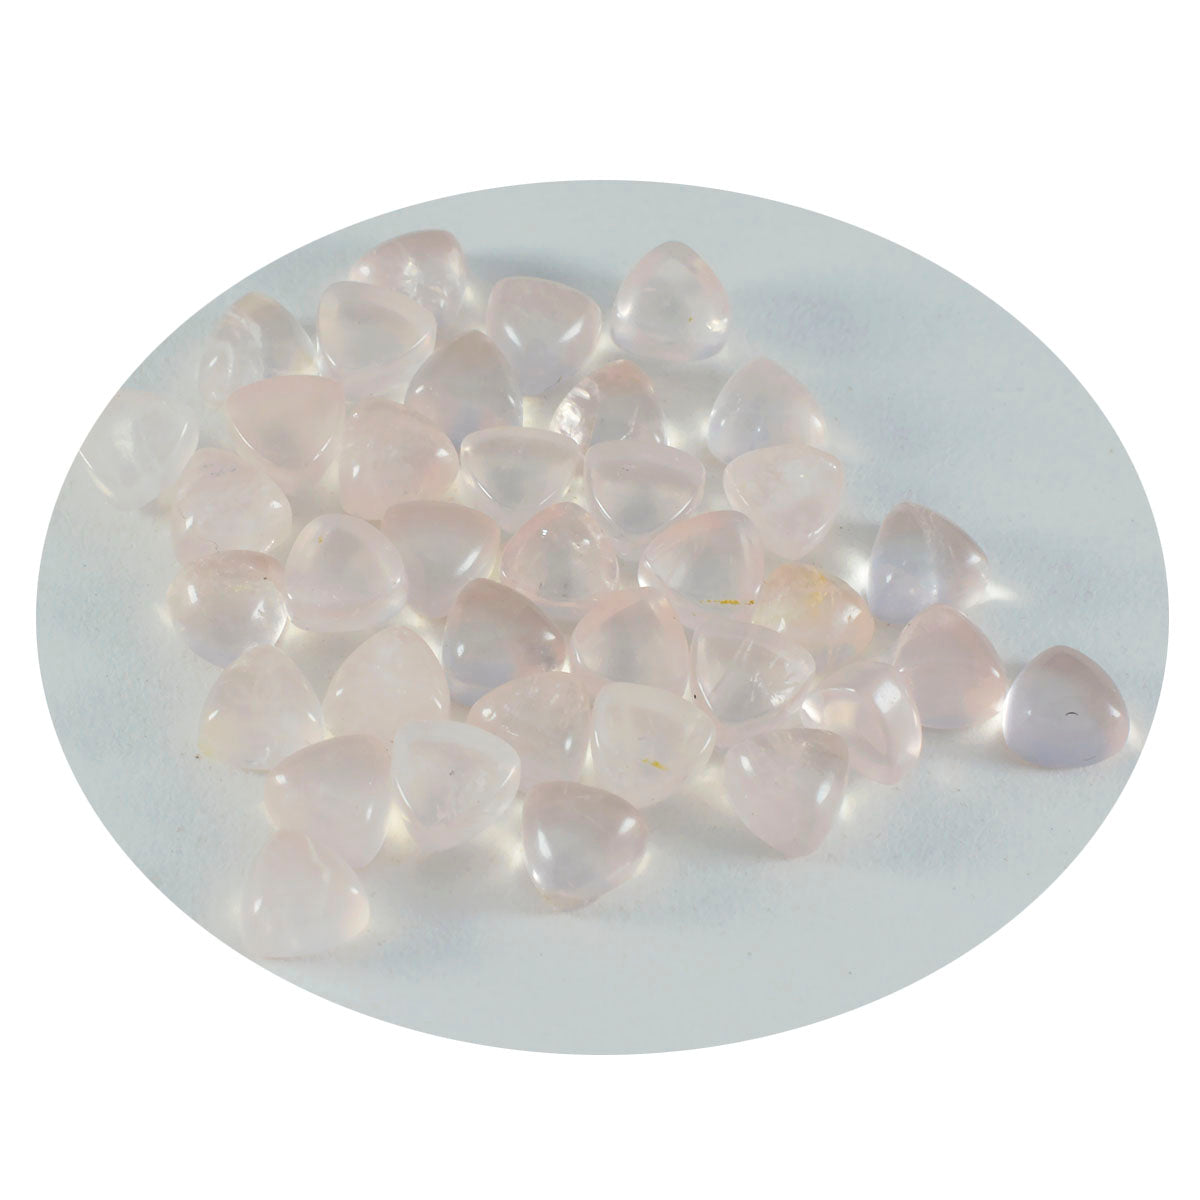 Riyogems 1pc cabochon de quartz rose rose 7x7mm forme trillion aa qualité pierre en vrac